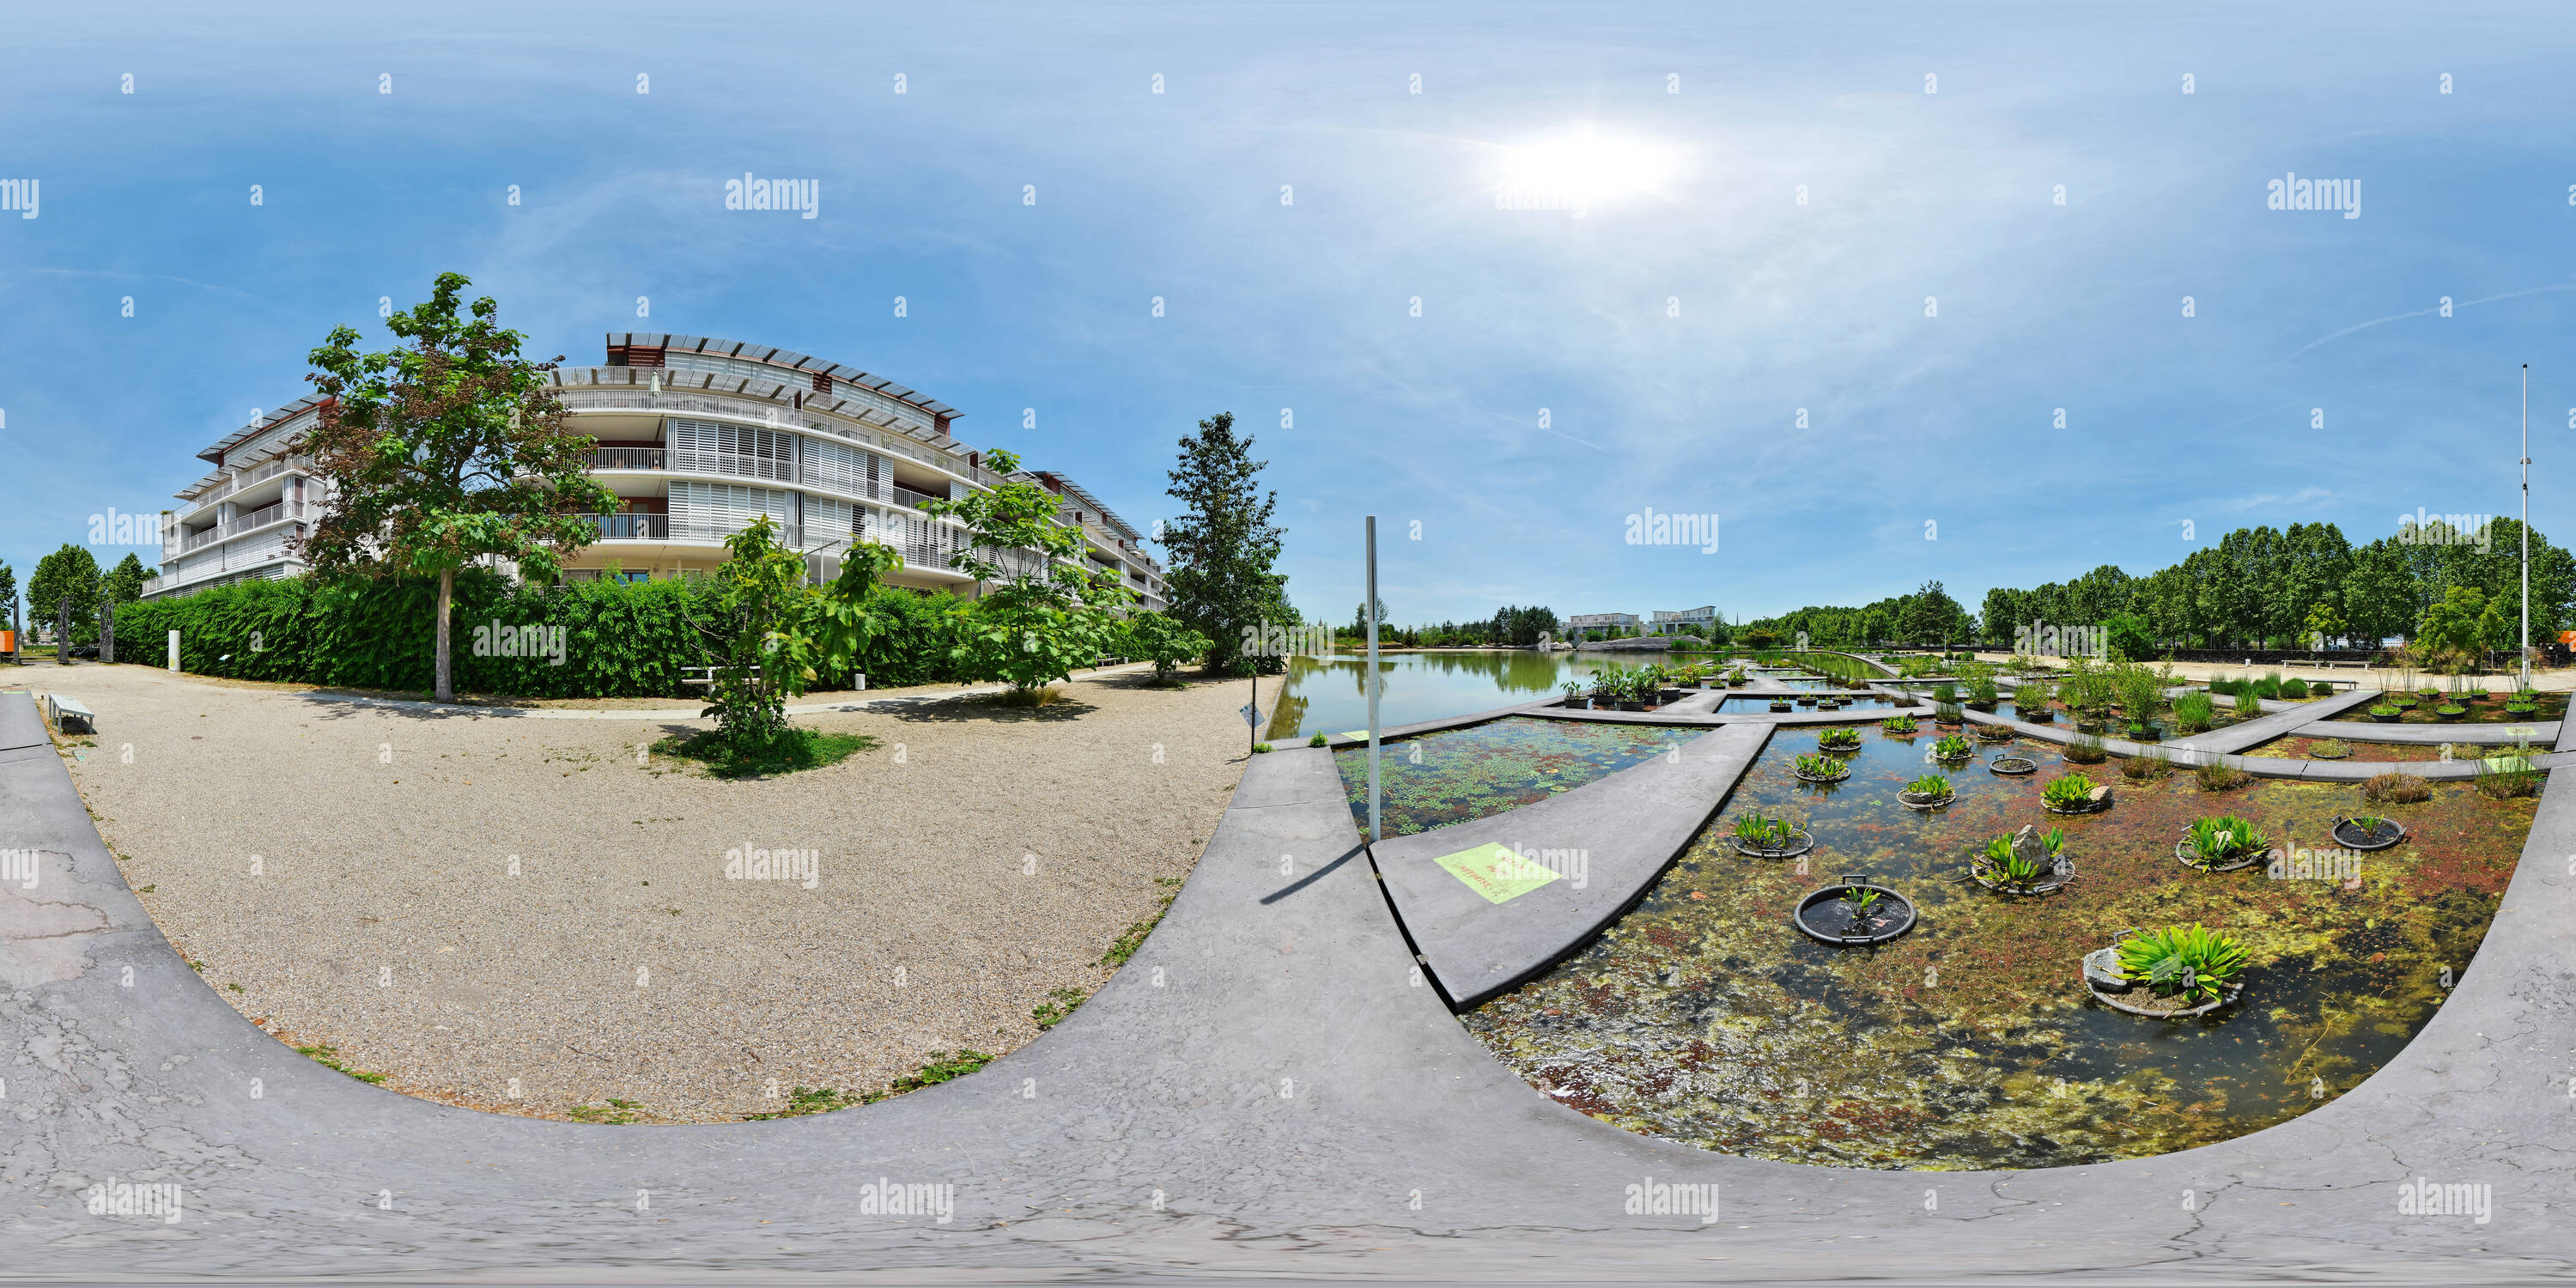 360° view of Jardin botanique de Bordeaux - France - Alamy